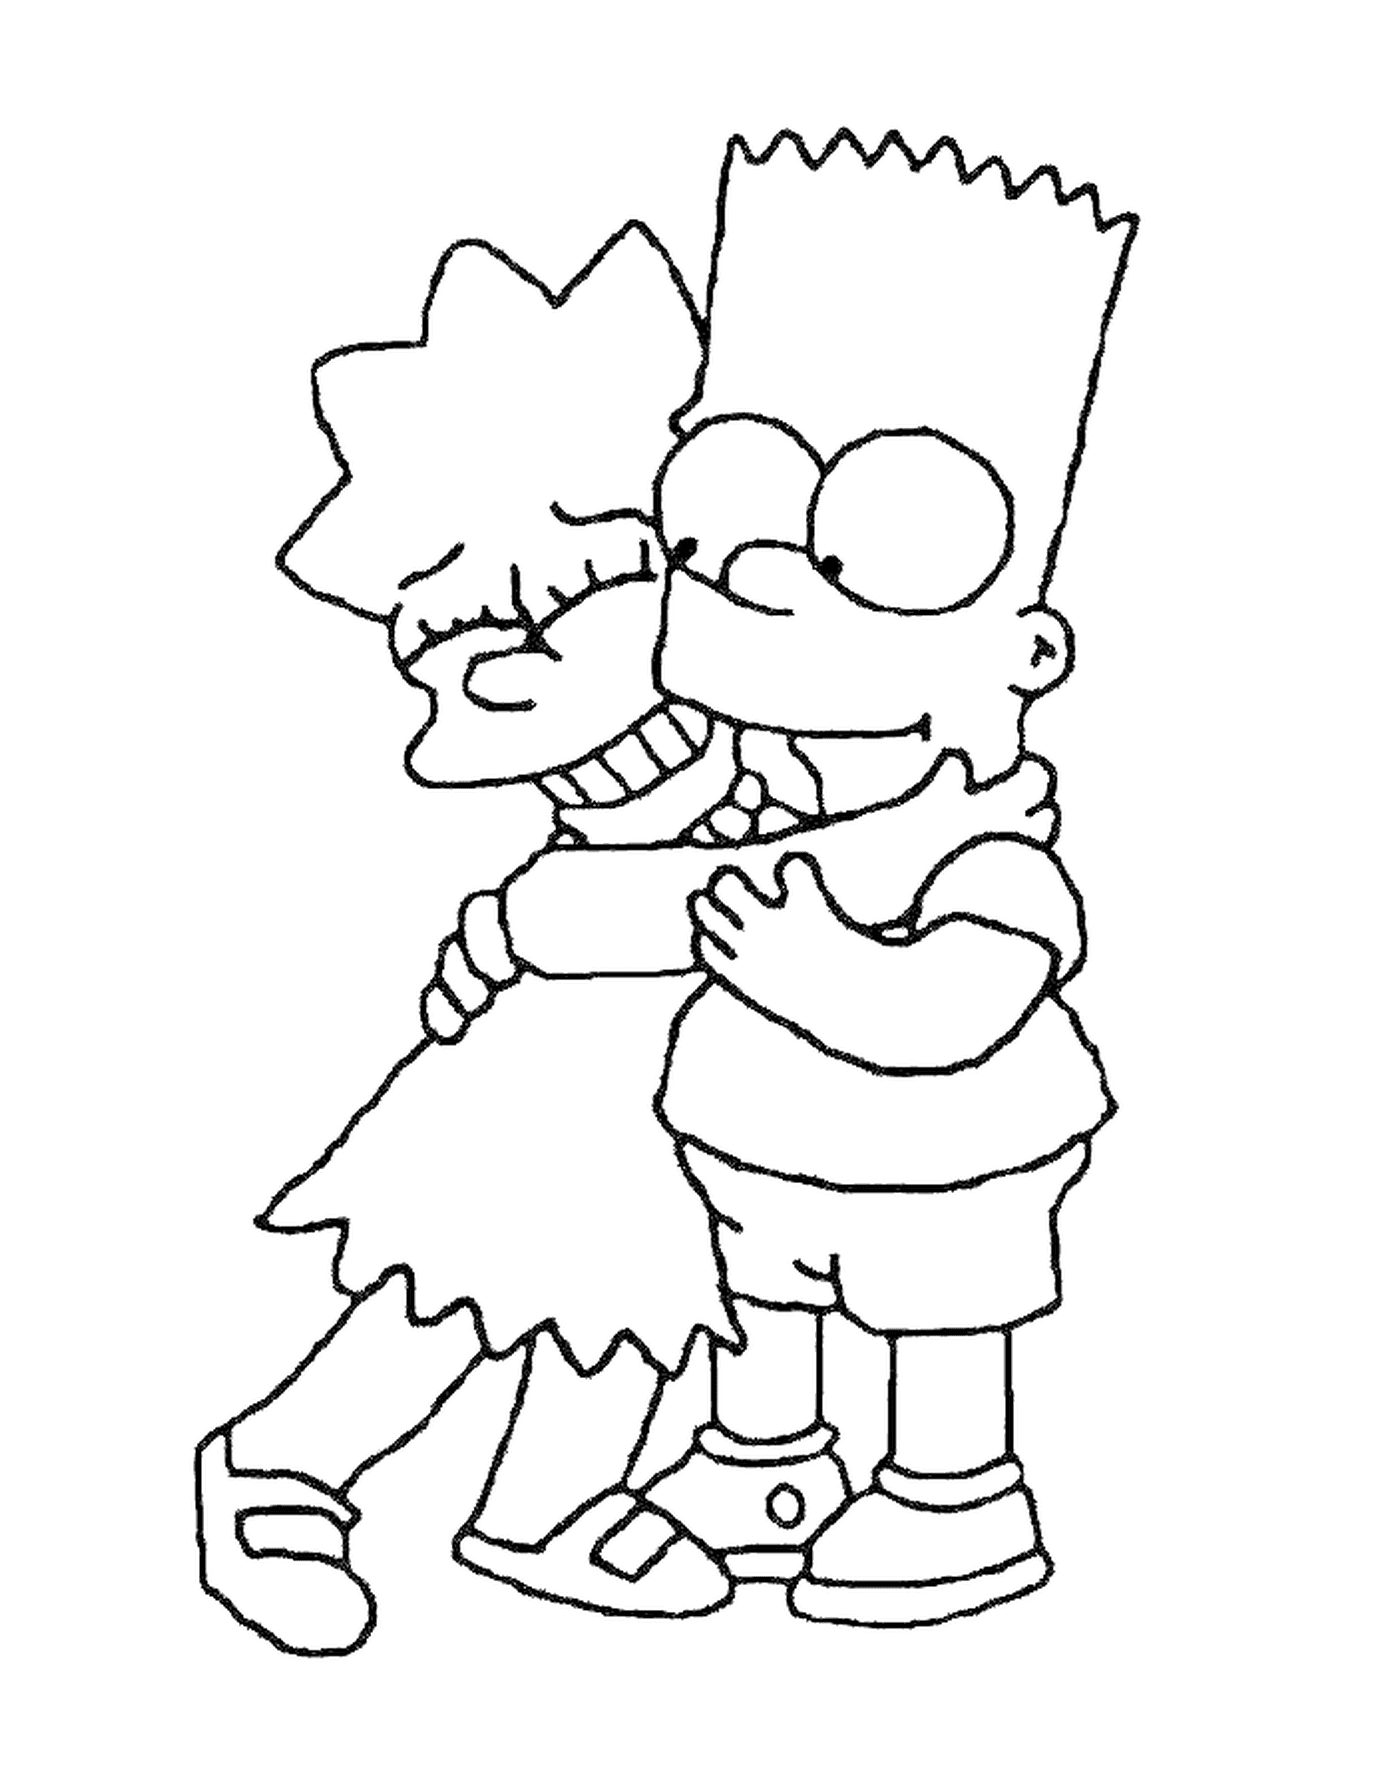  Bart und Lisa umarmen sich, Junge hält ein Mädchen in den Armen 